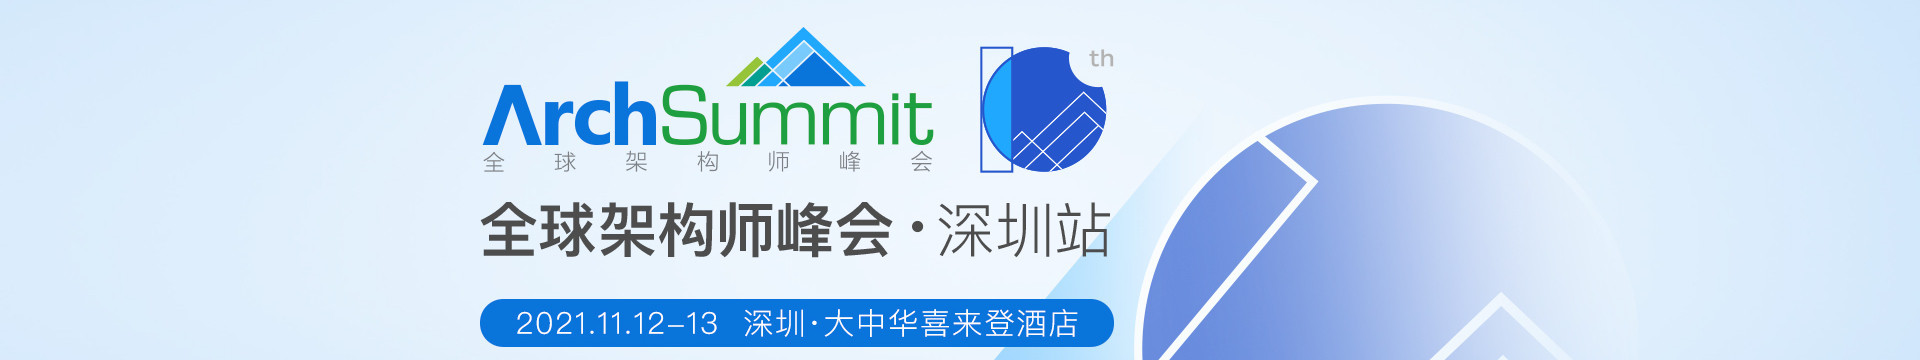 ArchSummit深圳2021|全球架构师峰会